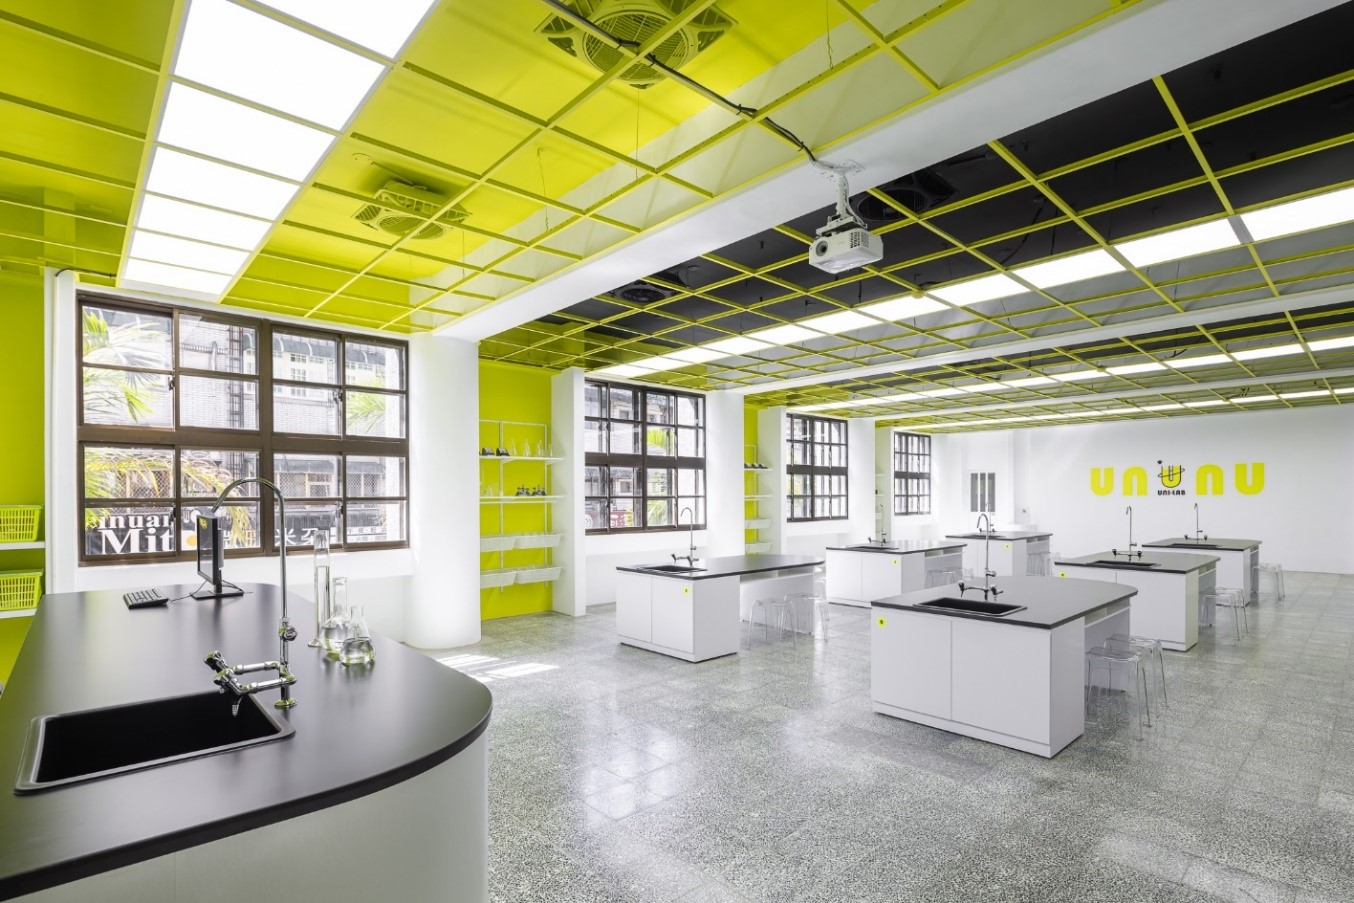 宜蘭縣立國華國中理化實驗室，改造後成為更安全並符合需求的實驗室空間。